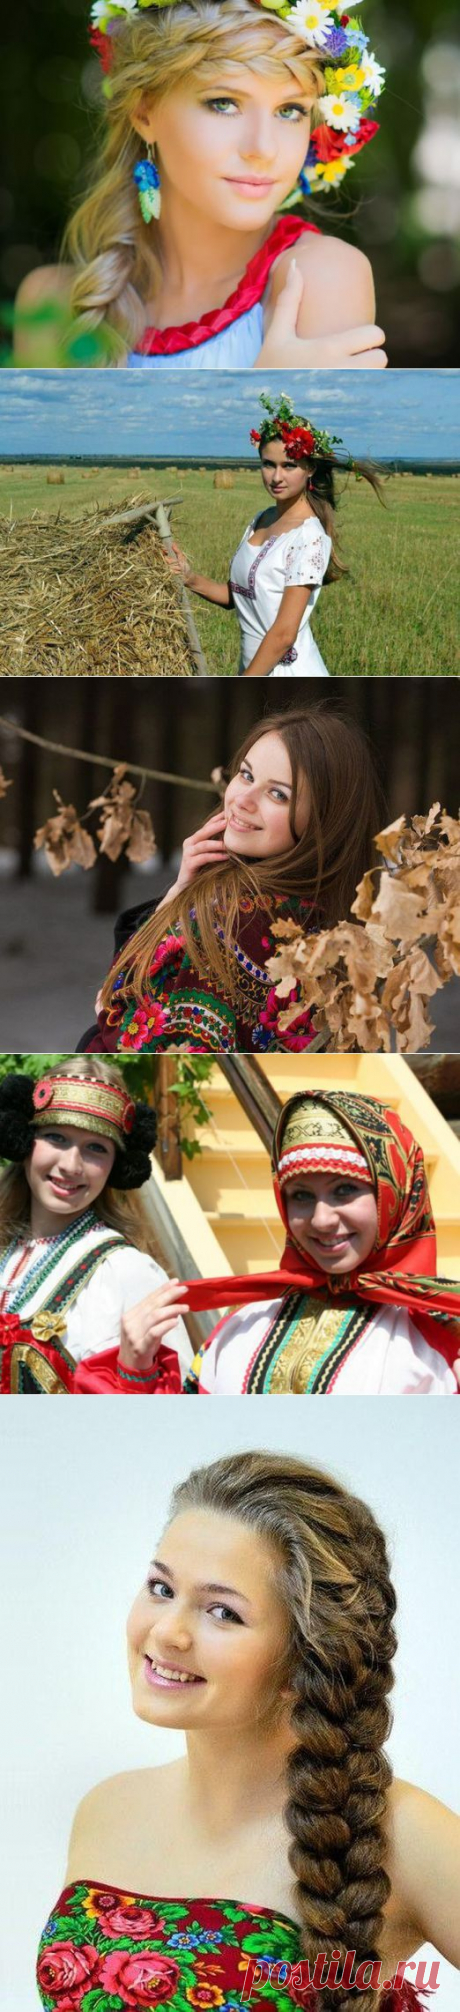 Натуральная красота русских девушек / Все для женщины